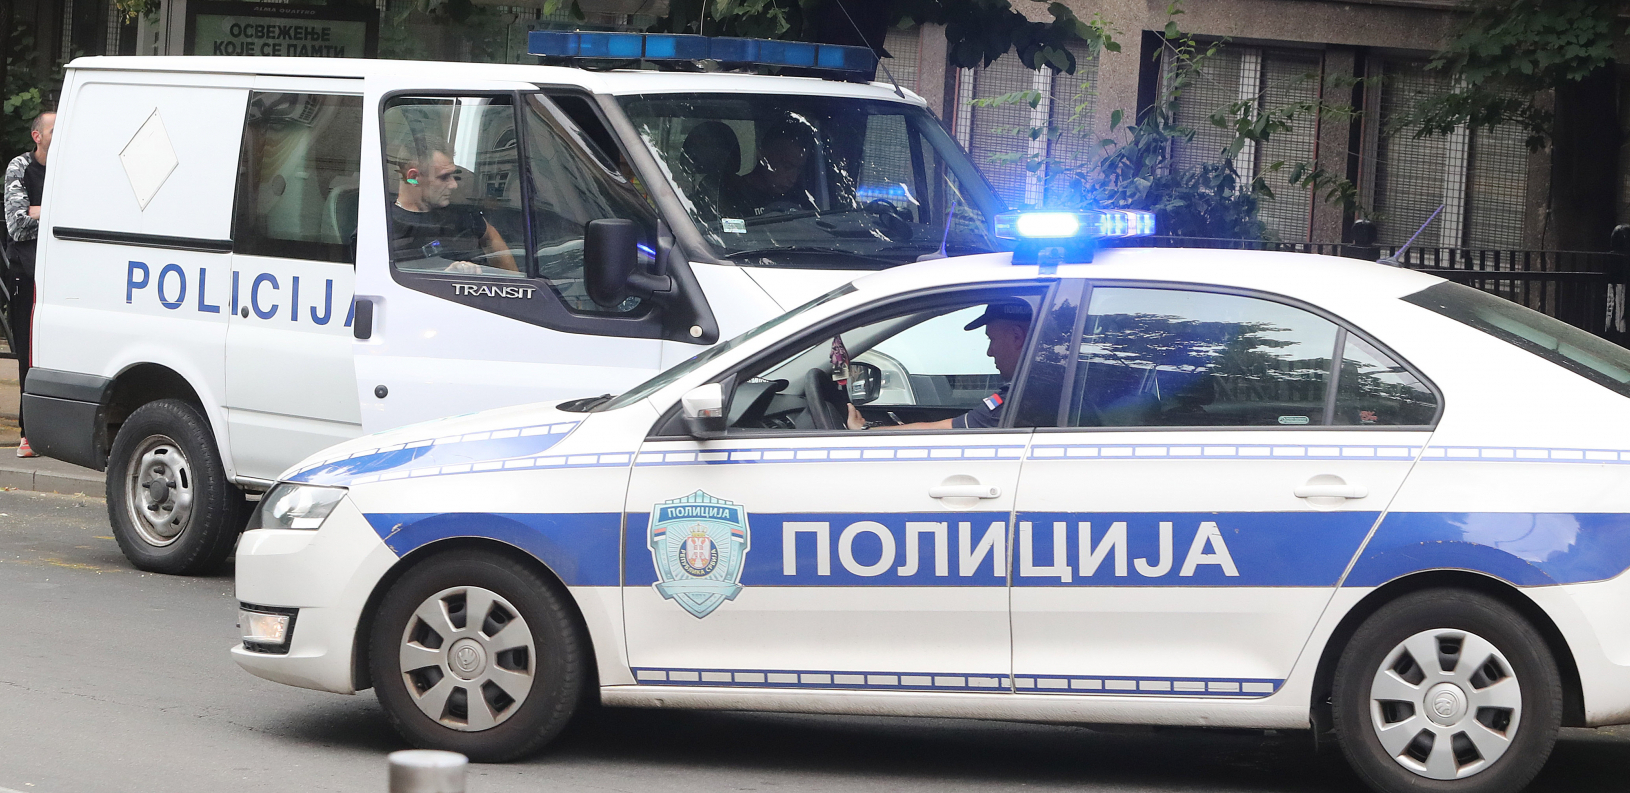 "NIJE BIO NA DUŽNOSTI" Oglasio se načelnik komunalne milicije nakon što je njihov pripadnik prebio  policijskog inspektora u Nišu